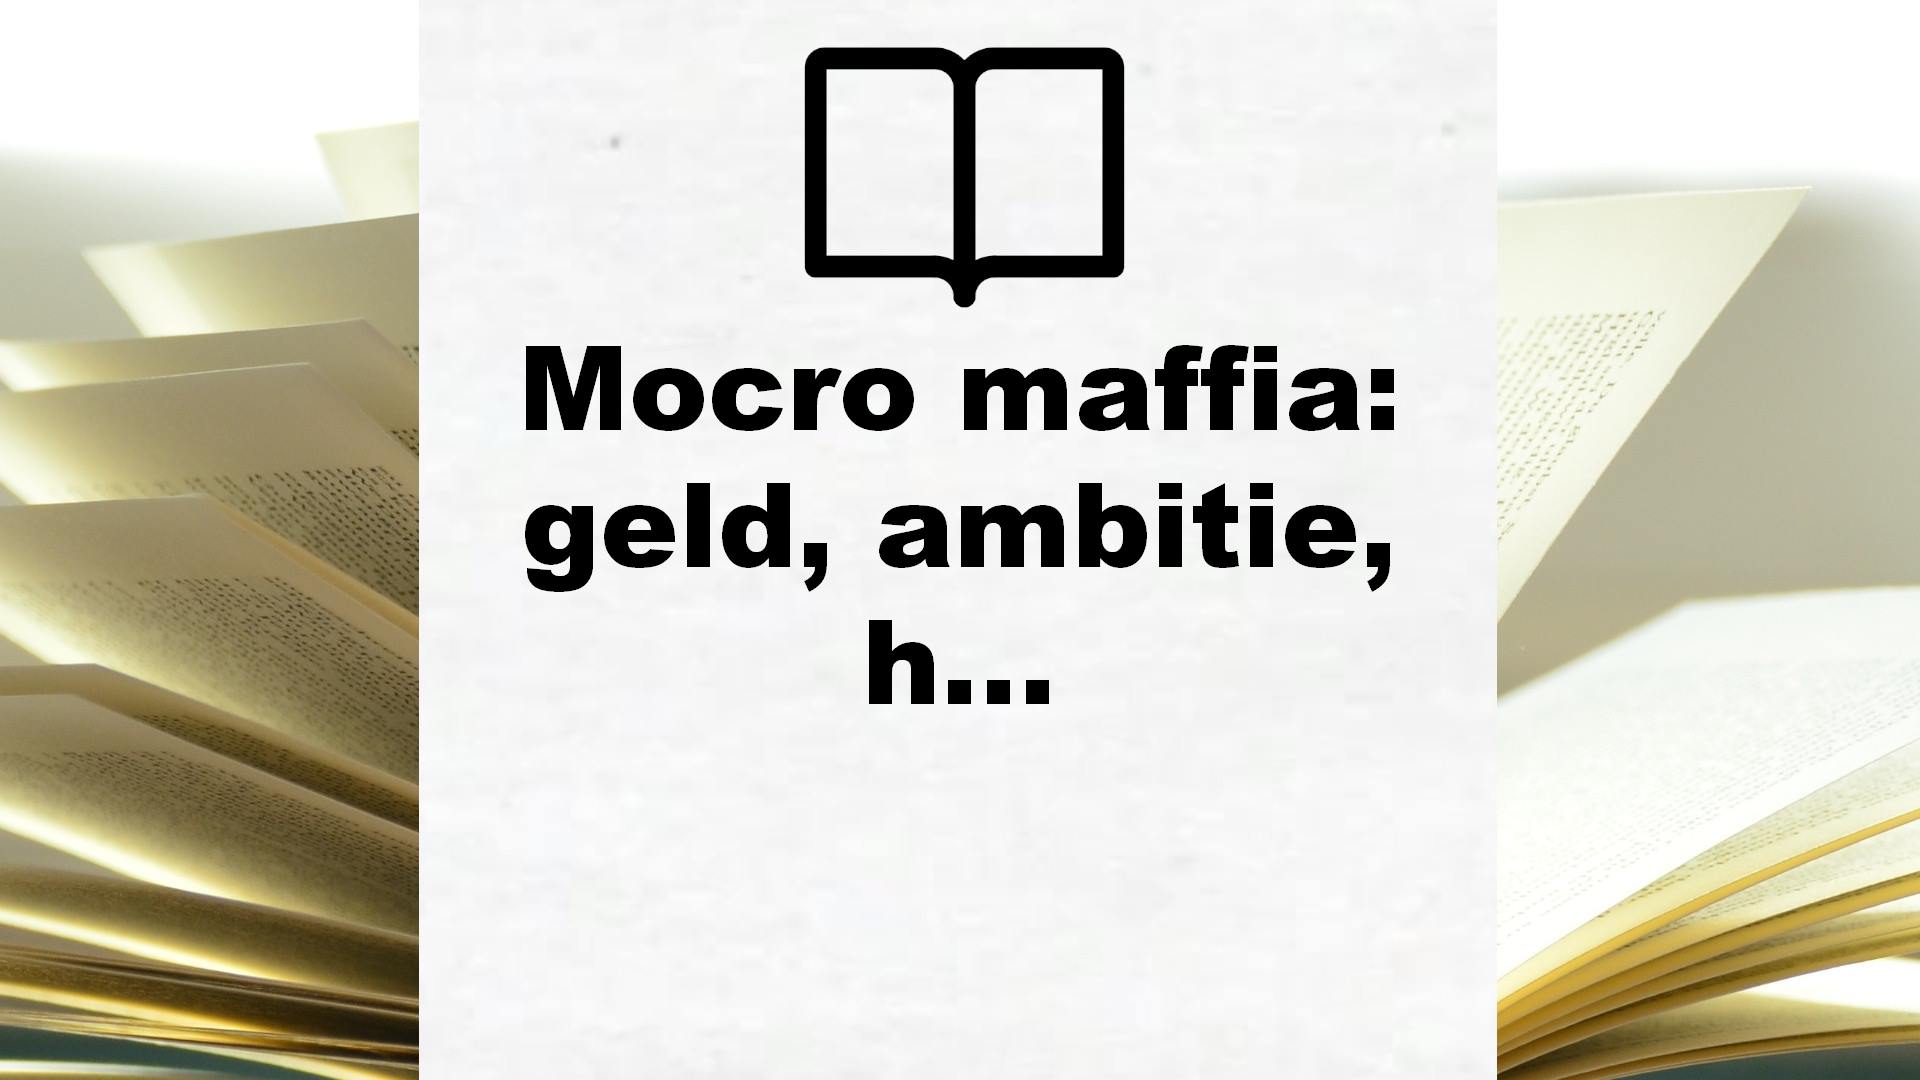 Mocro maffia: geld, ambitie, hoogmoed en verraad in de onderwereld – Boekrecensie